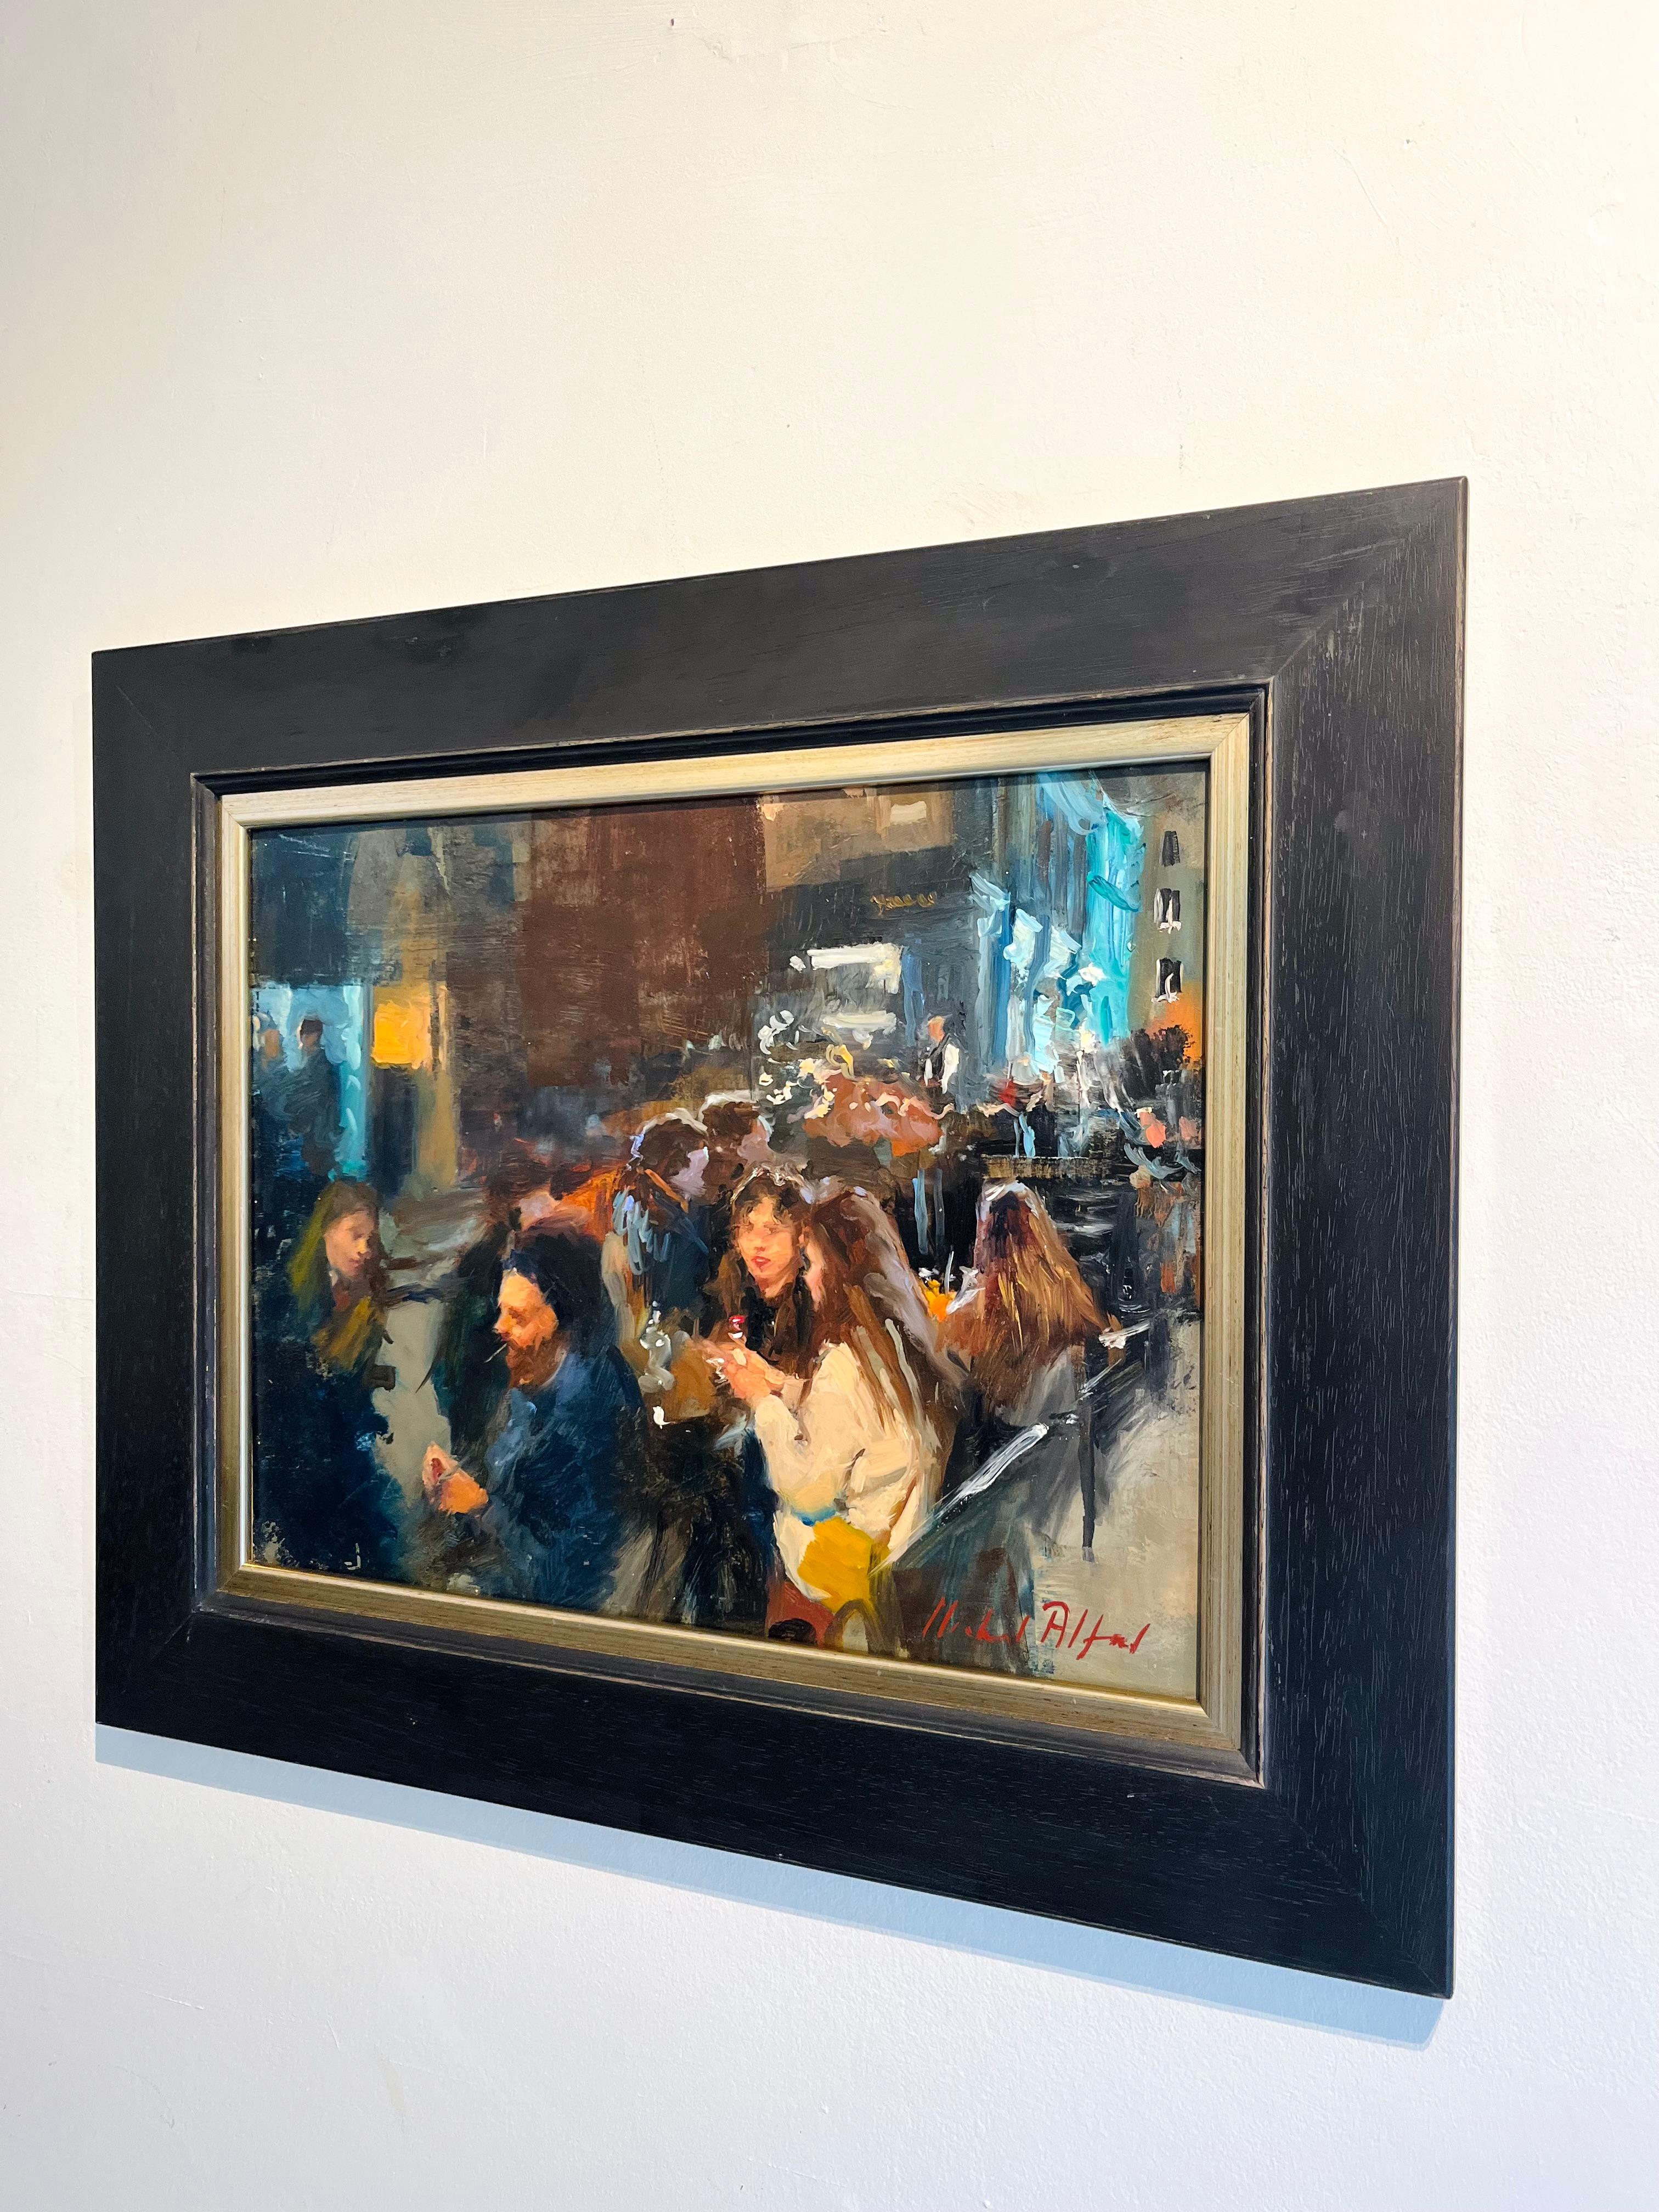 Outside Dining, West End-original impressionnisme - peinture figurative de paysage urbain  - Impressionnisme Painting par Michael Alford